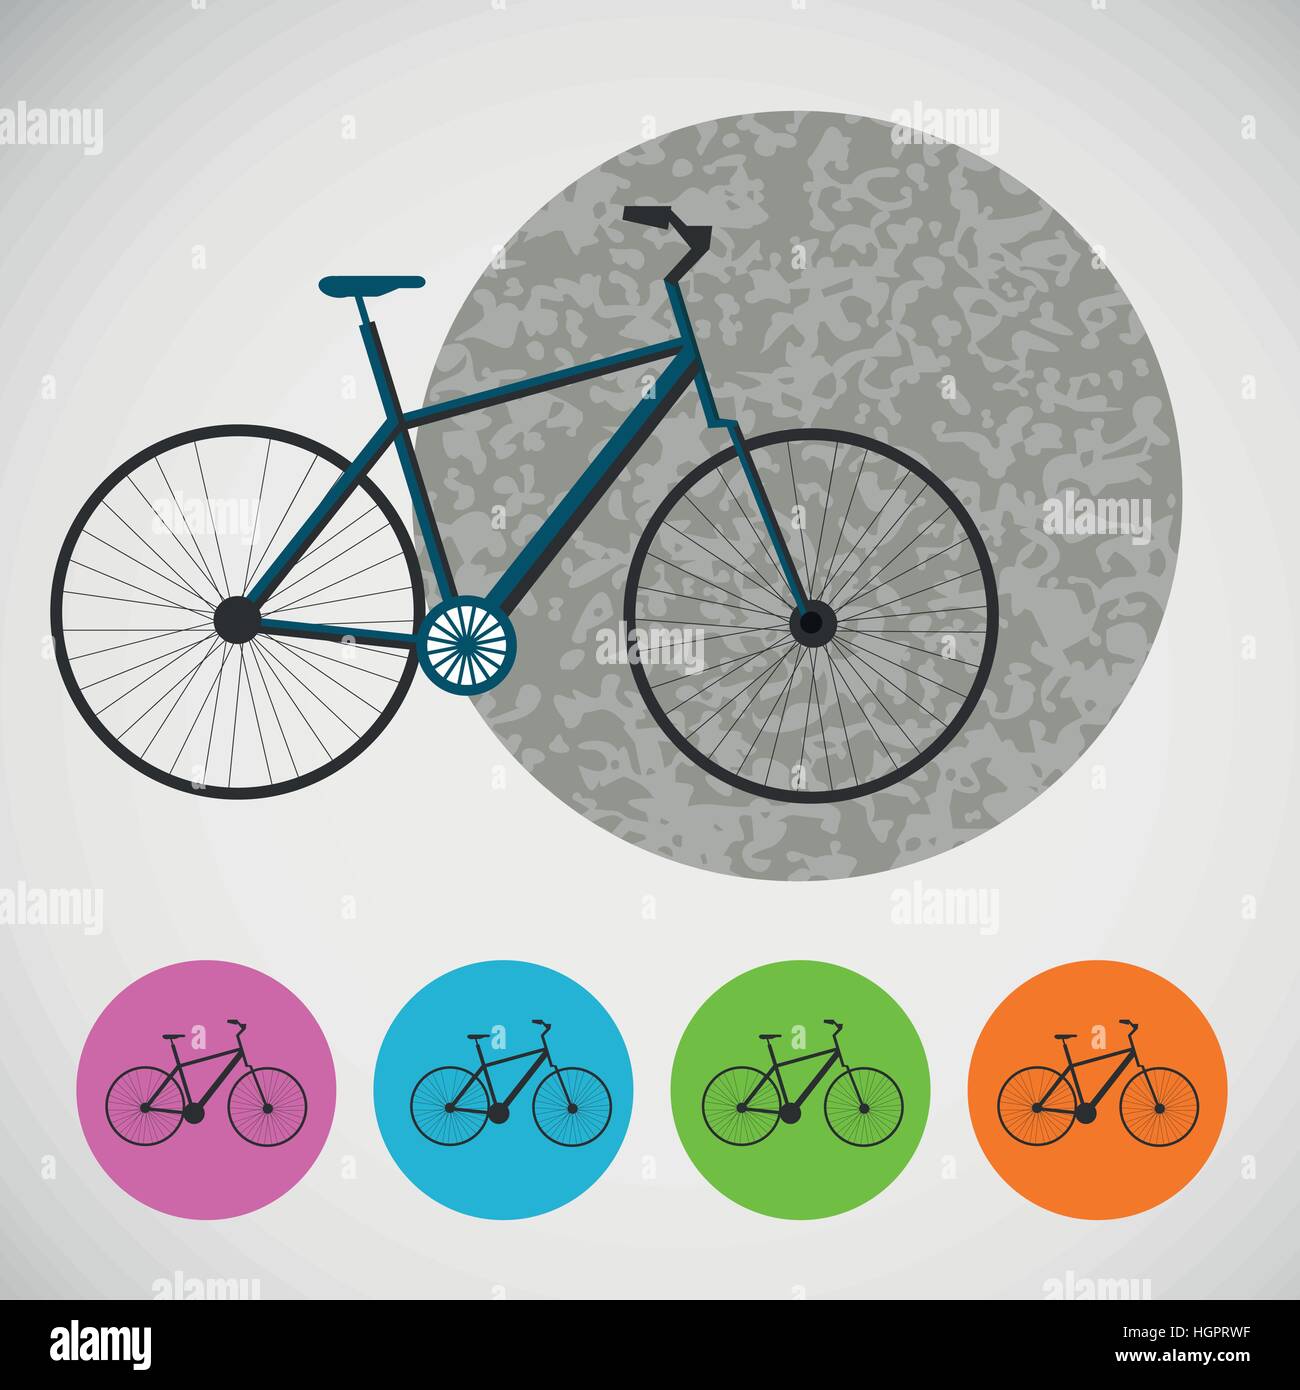 Vektor-set Fahrrad auf farbigem Hintergrund Stock Vektor